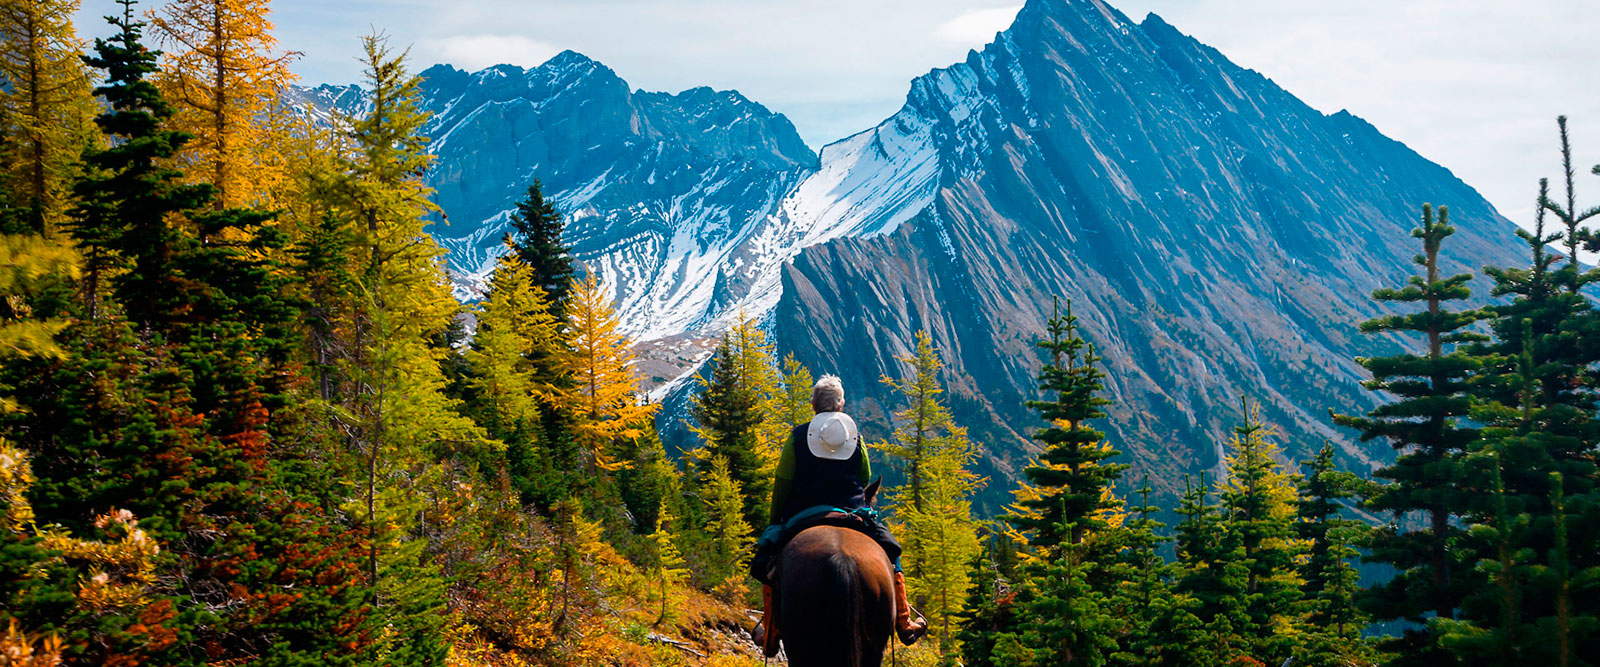 Équitation dans le parc national Banff